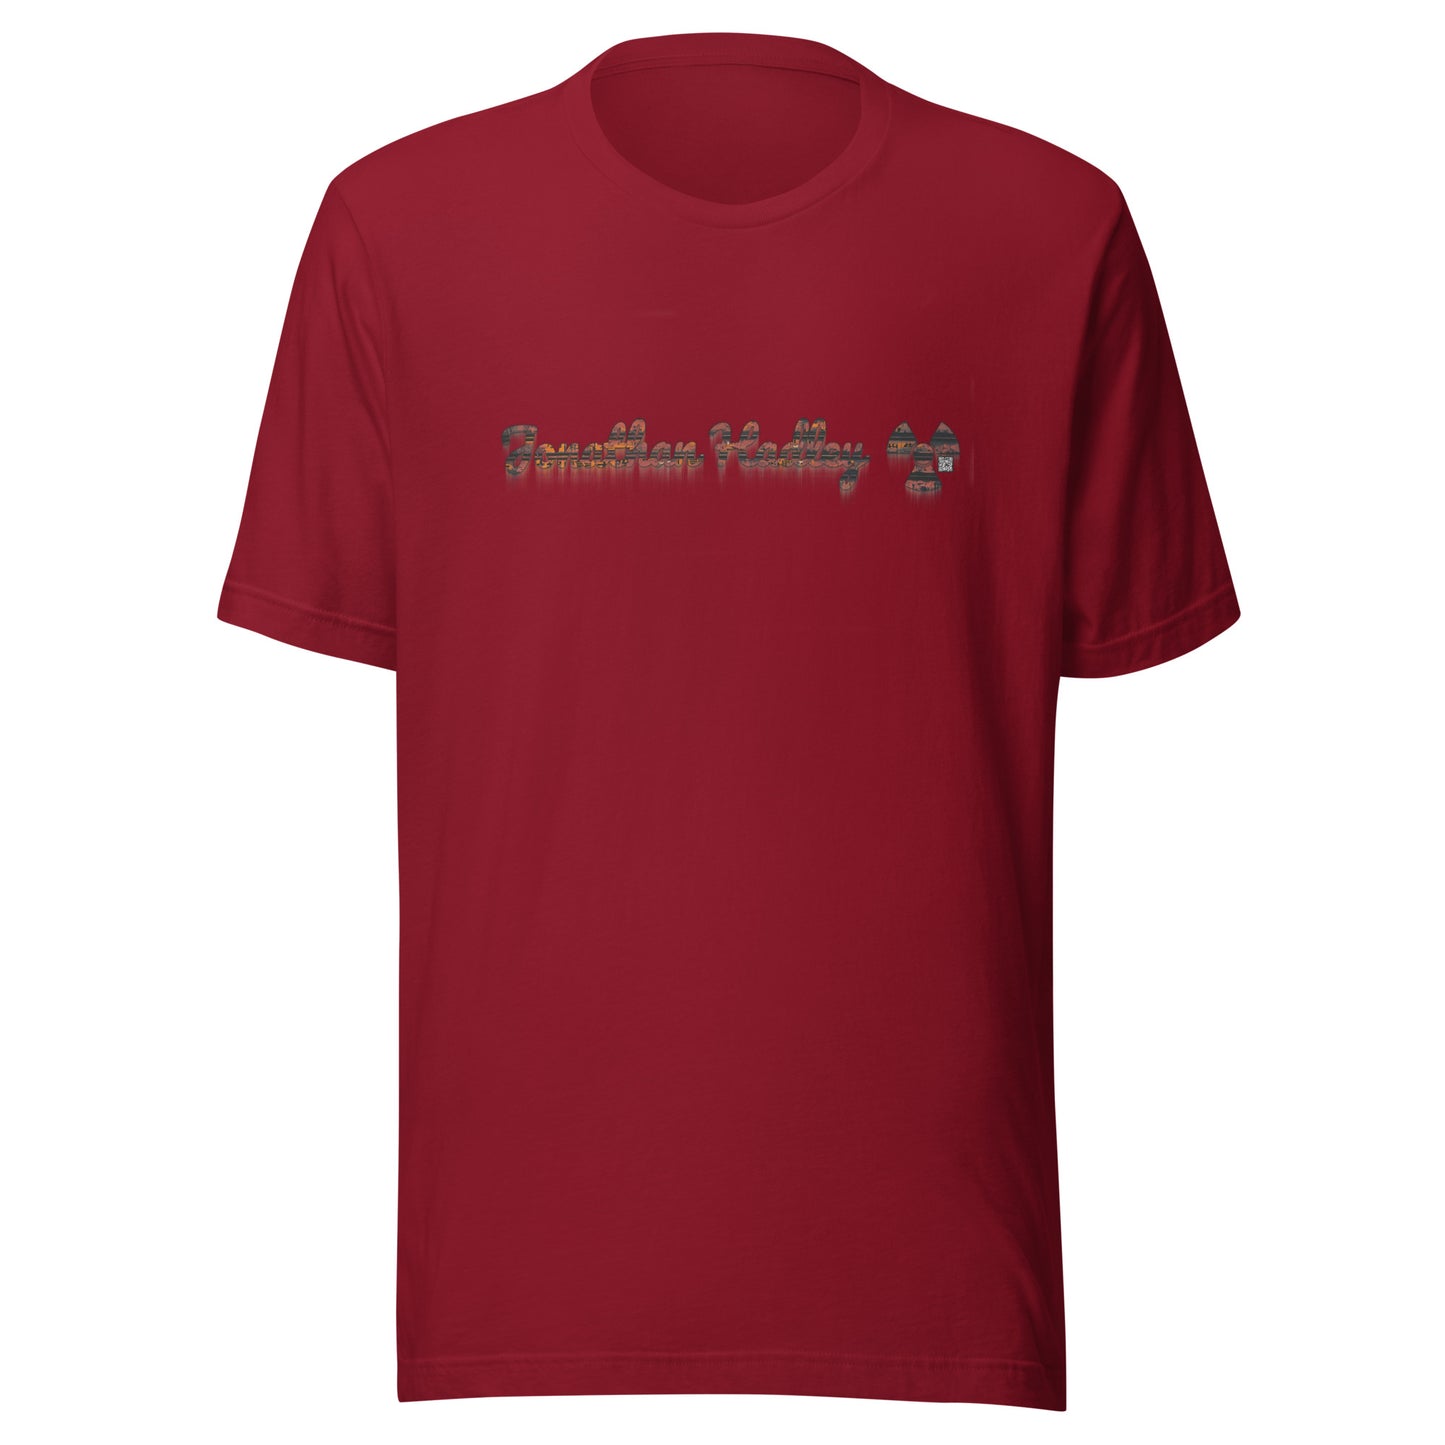 Jonathan Hadley Post Apocalyptic Rust T-Shirt